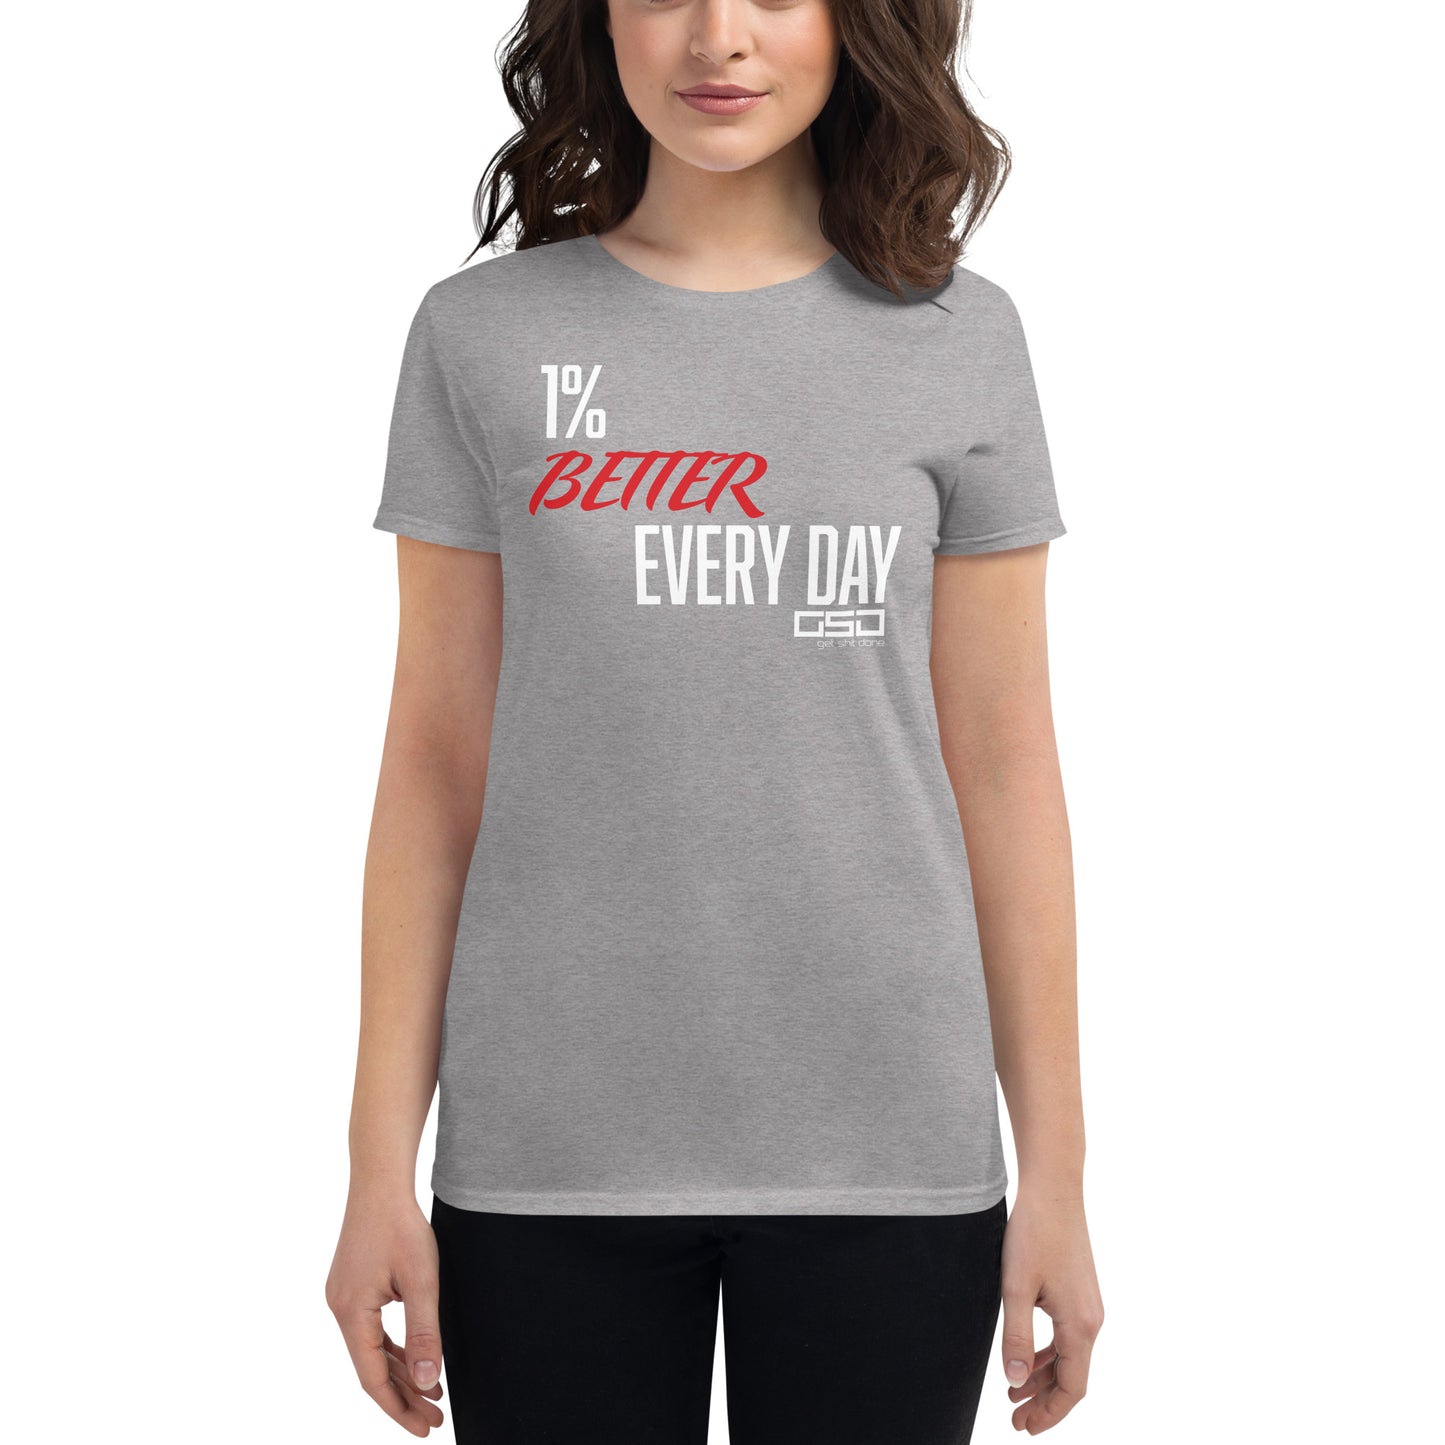 One Percent Better-Women's short sleeve t-shirt